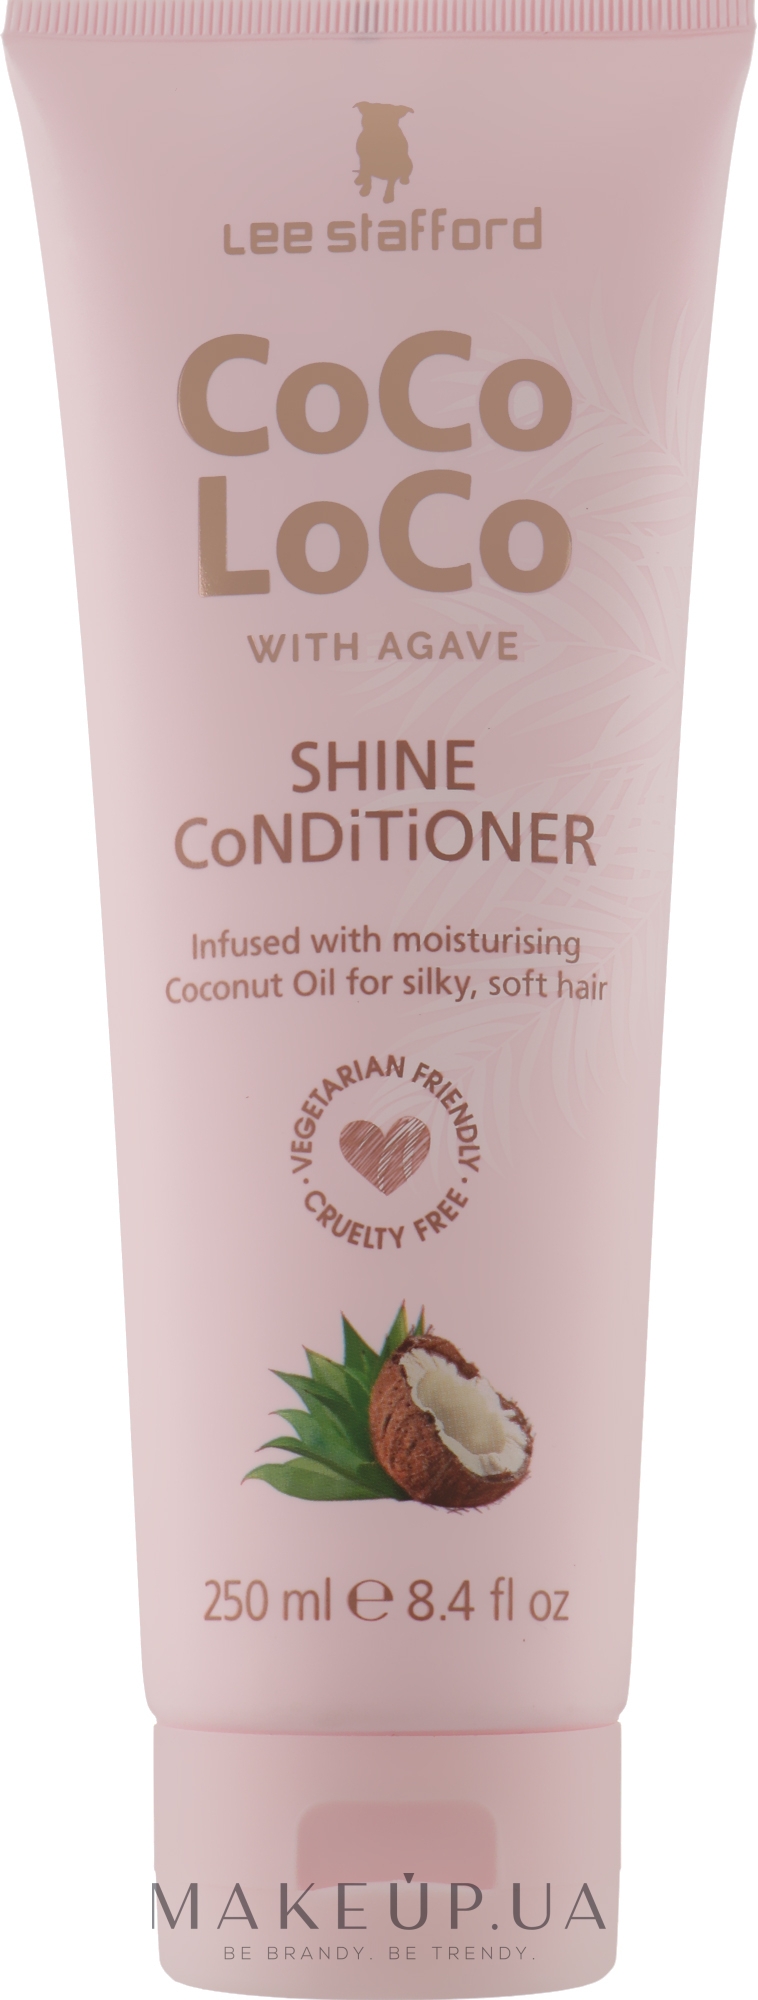 Зволожувальний кондиціонер для волосся - Lee Stafford Сосо Loco Shine Conditioner with Coconut Oil — фото 250ml